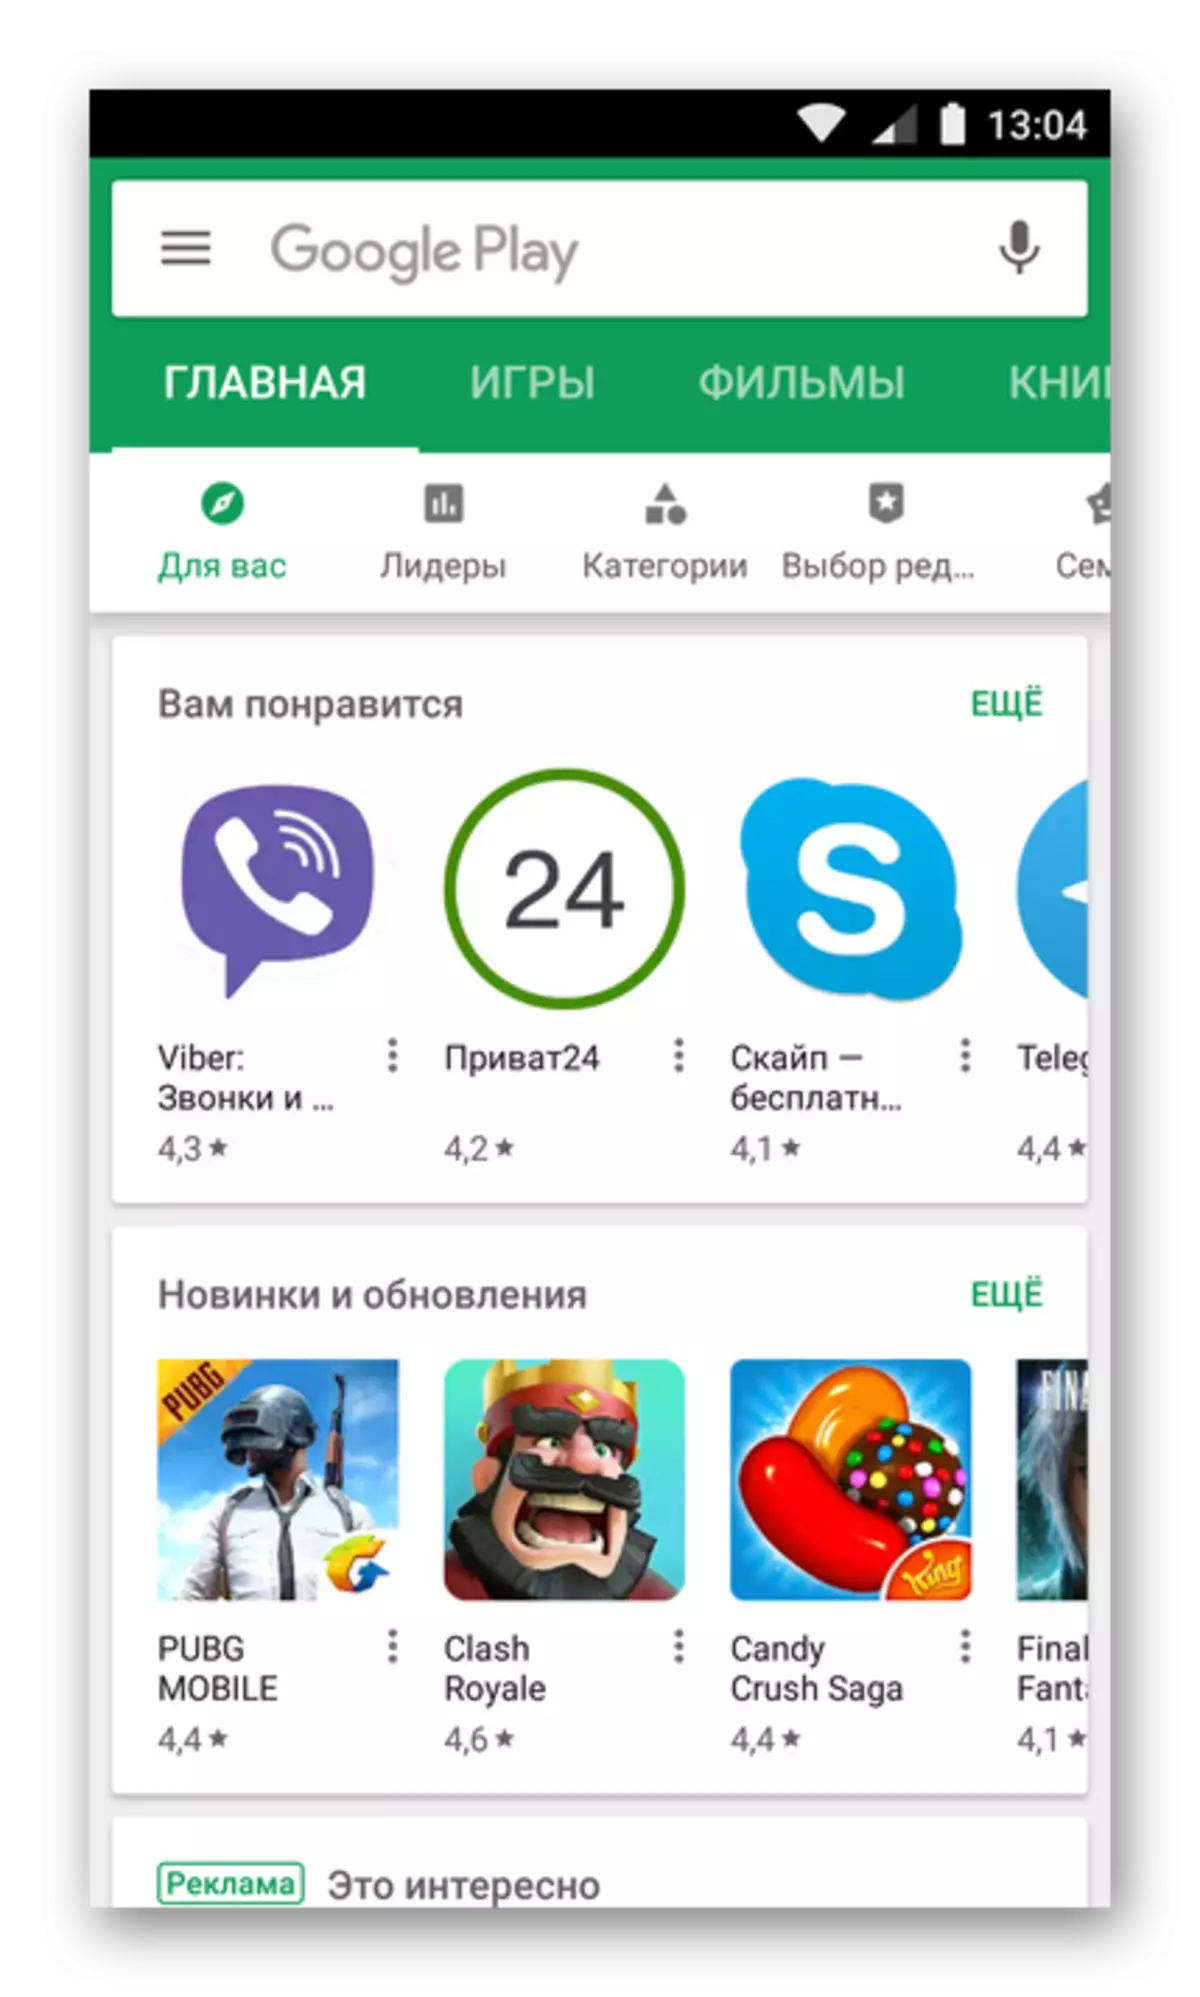 Menginstal aplikasi dari Google Play Market di Android